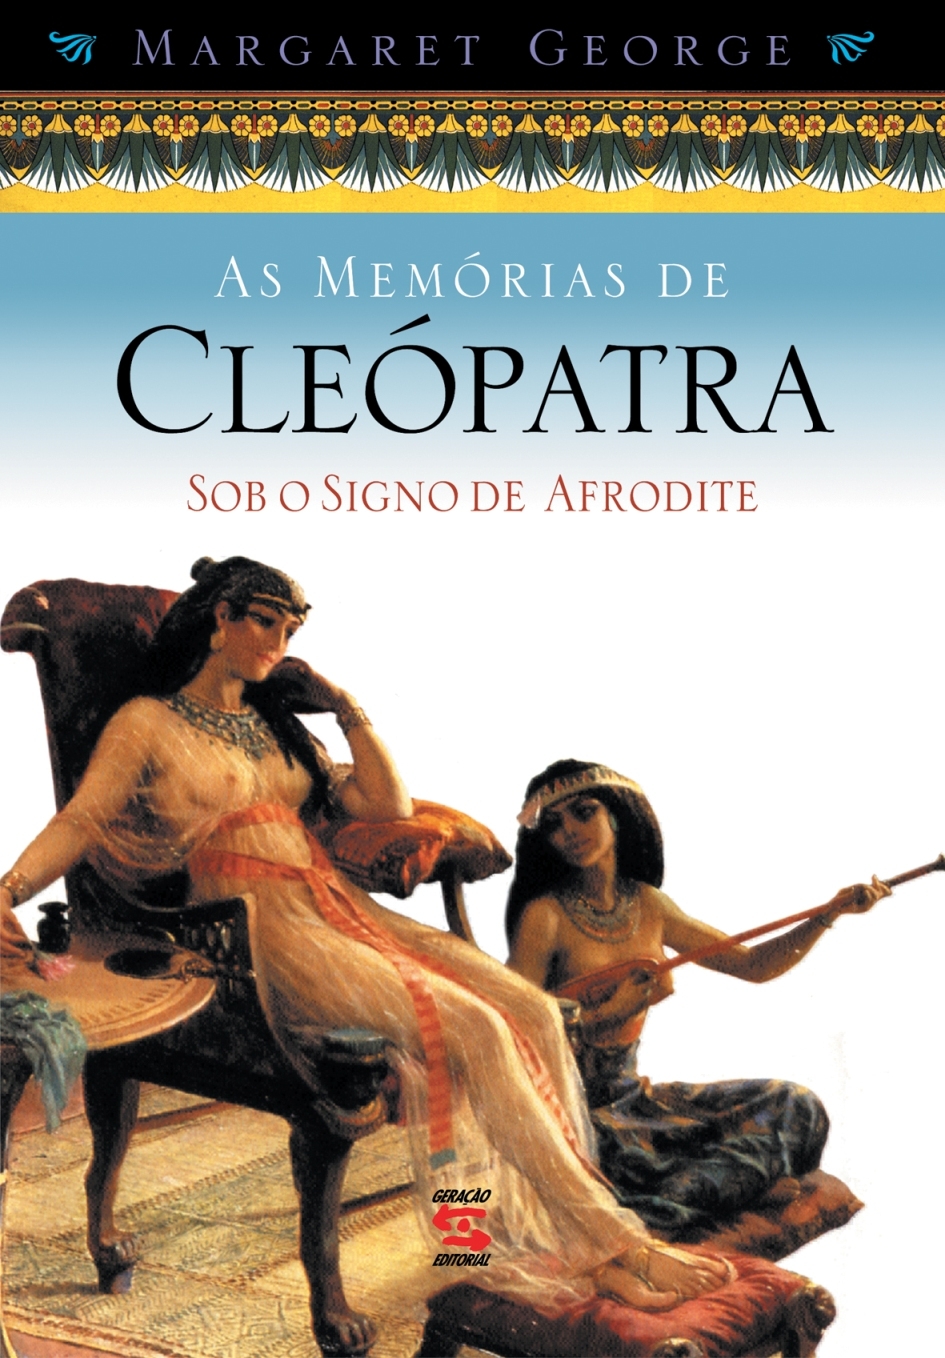 As memórias de Cleópatra